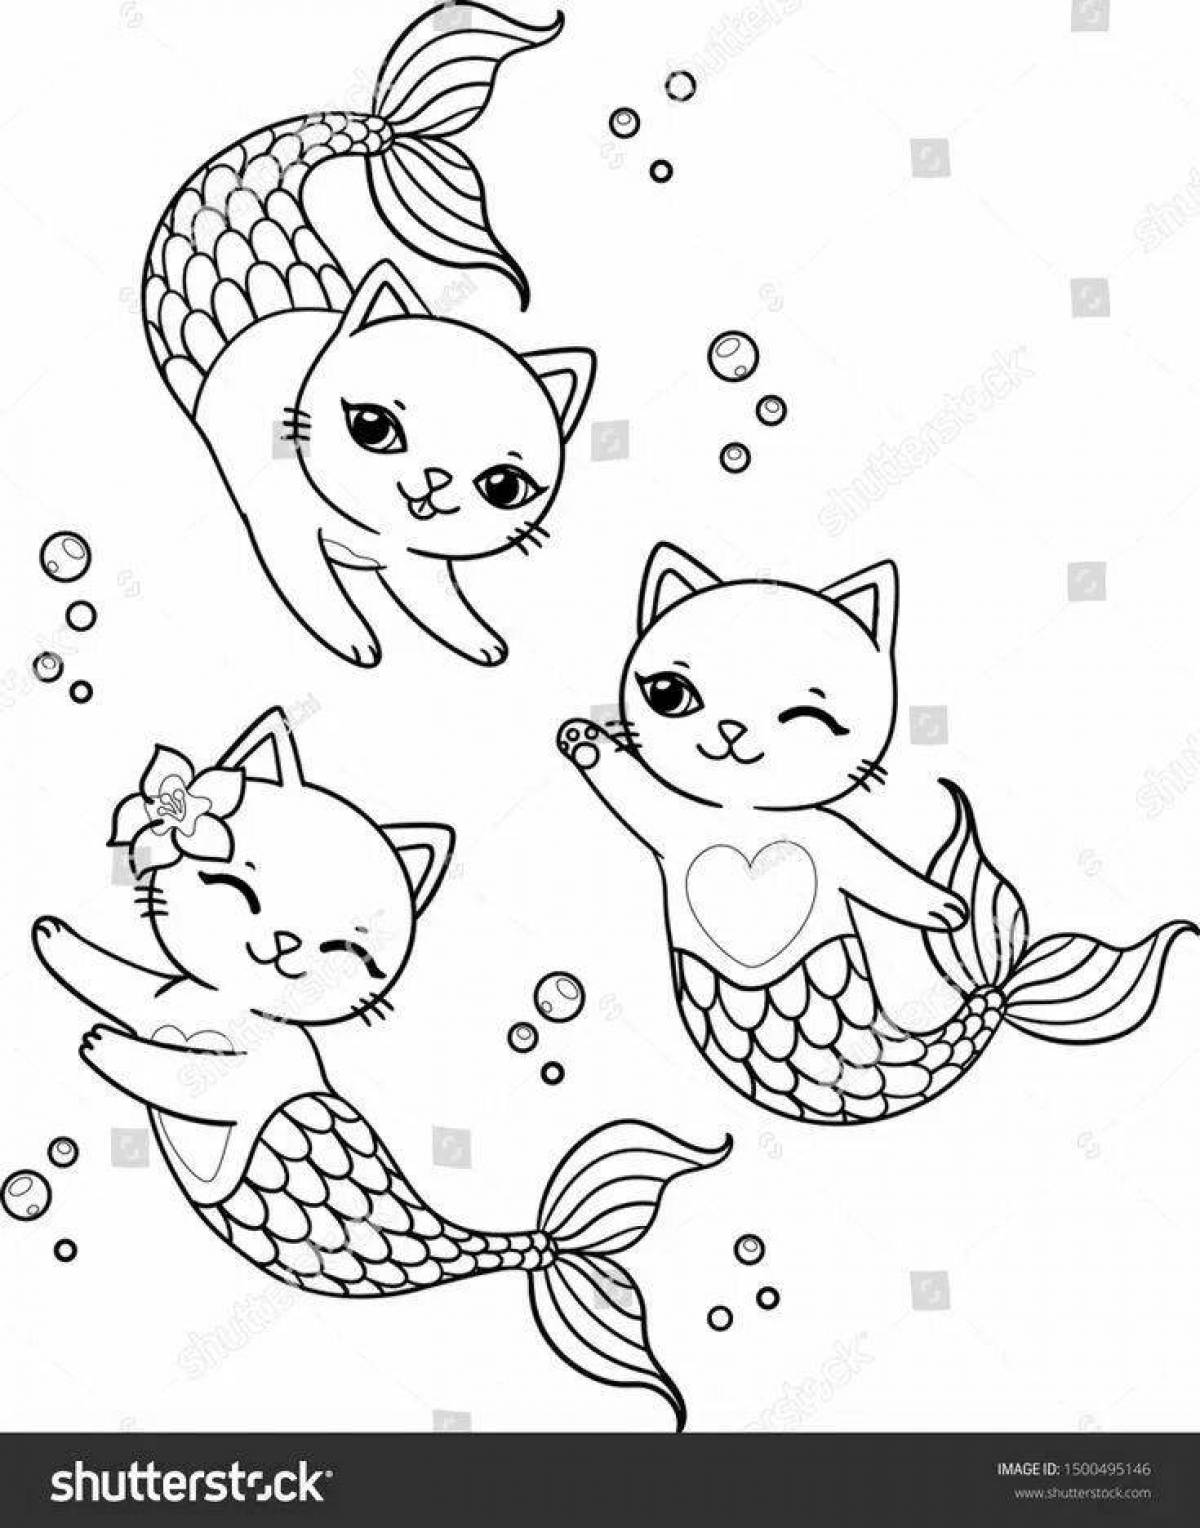 Poetic mermaid cat coloring book